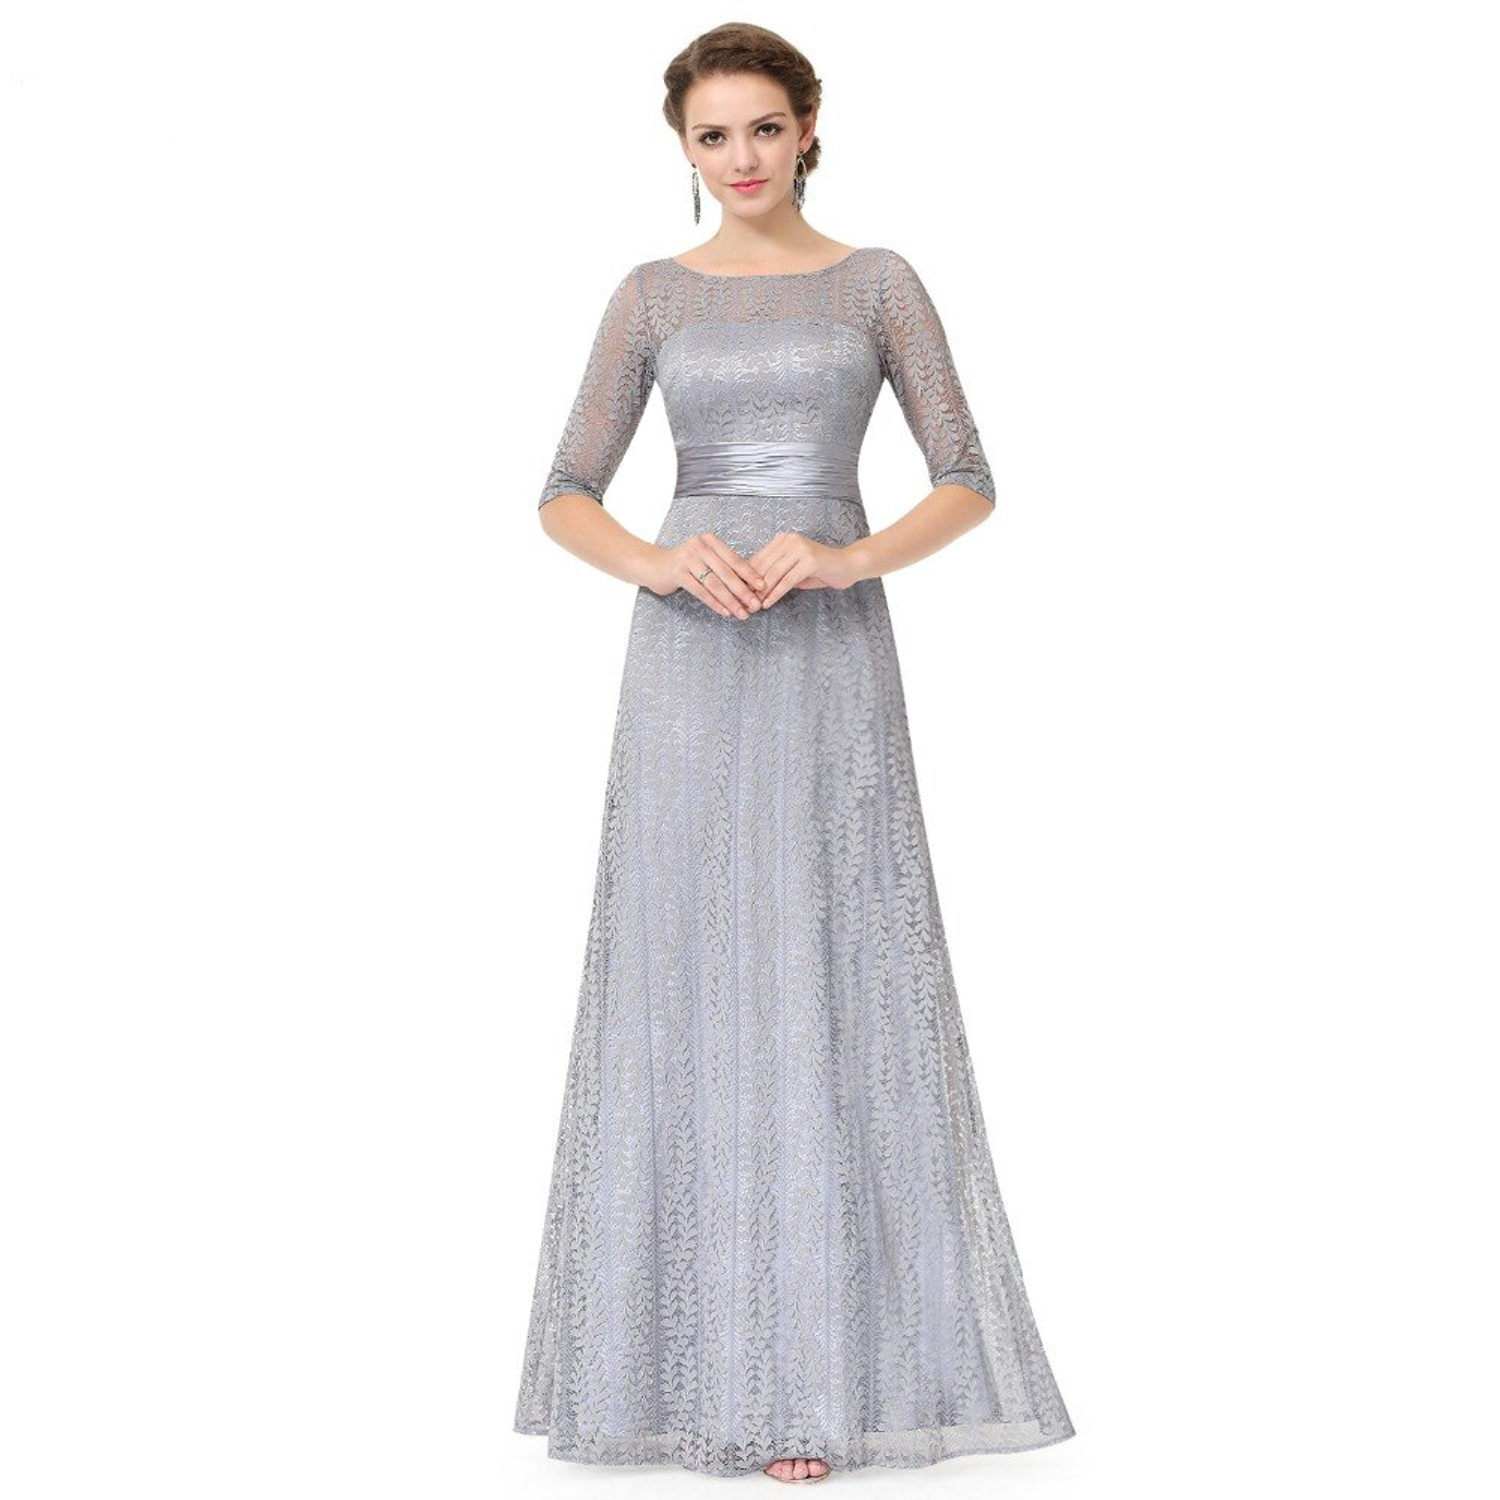 Gray bridesmaid dress